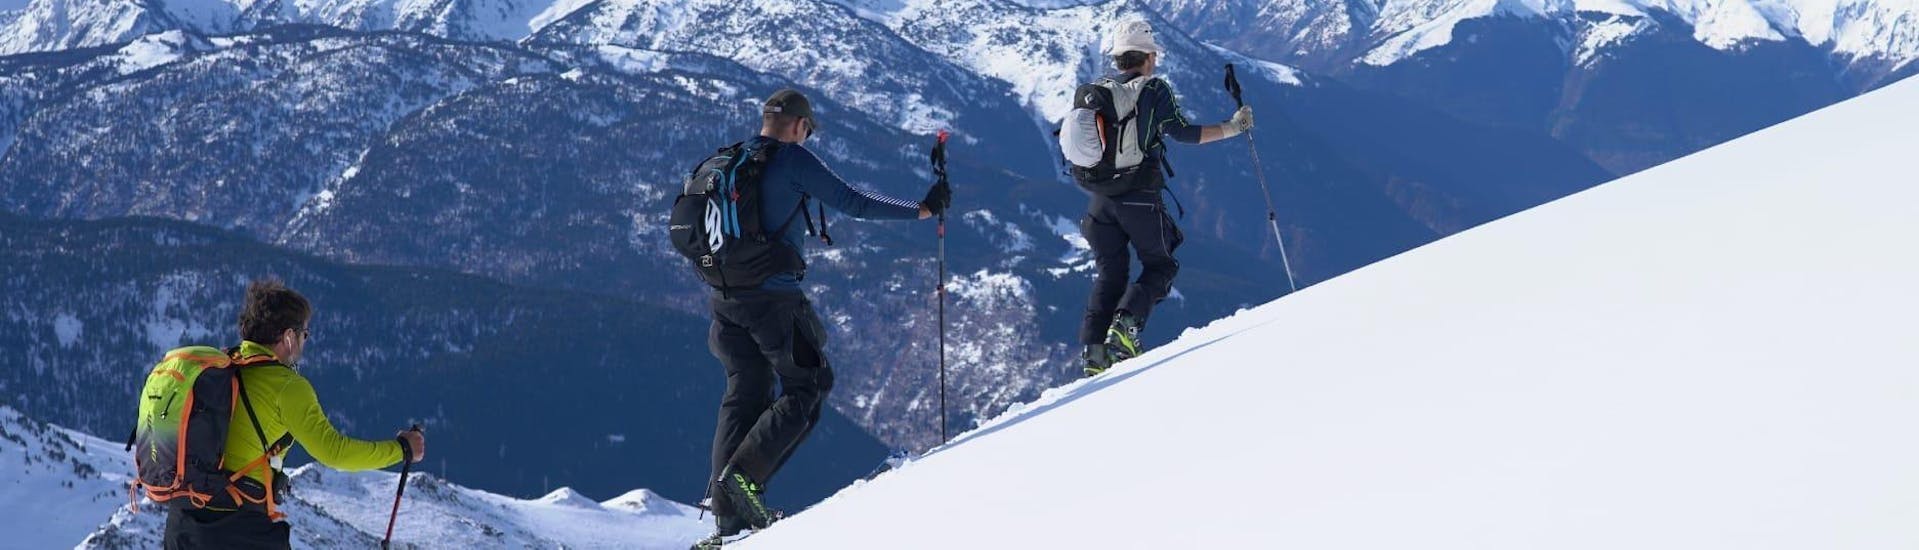 De tourdeelnemers lopen ijverig de berg op samen met de privé-skitourgids voor alle niveaus van Escuela Ski Cerler.